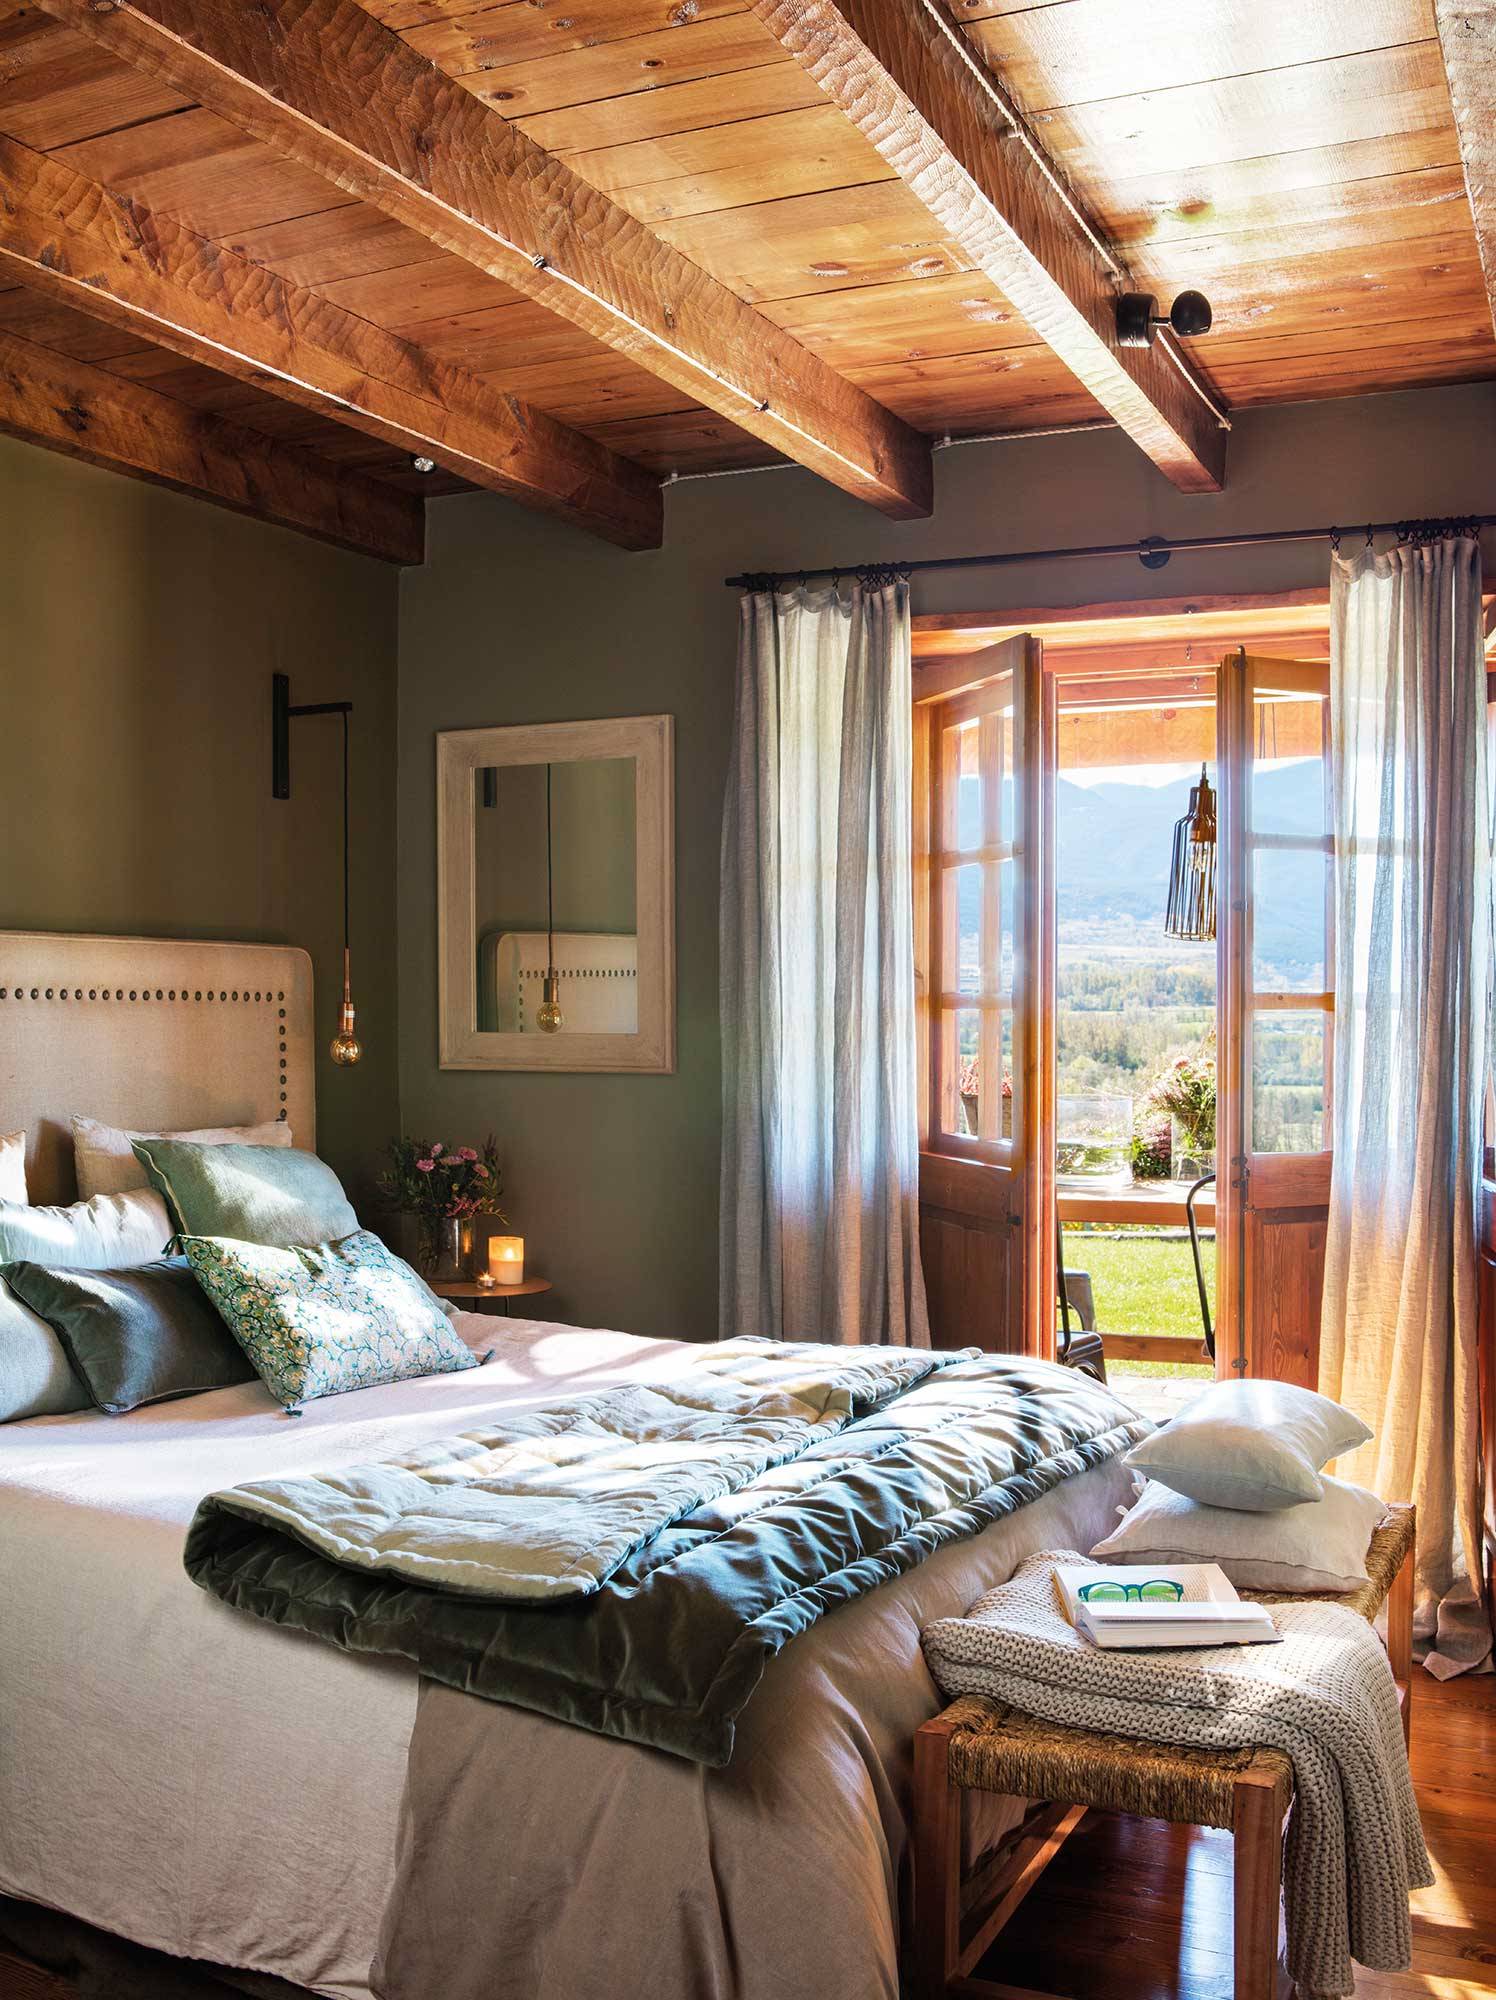 Dormitorio rústico con vigas de madera y paredes en verde_00497892